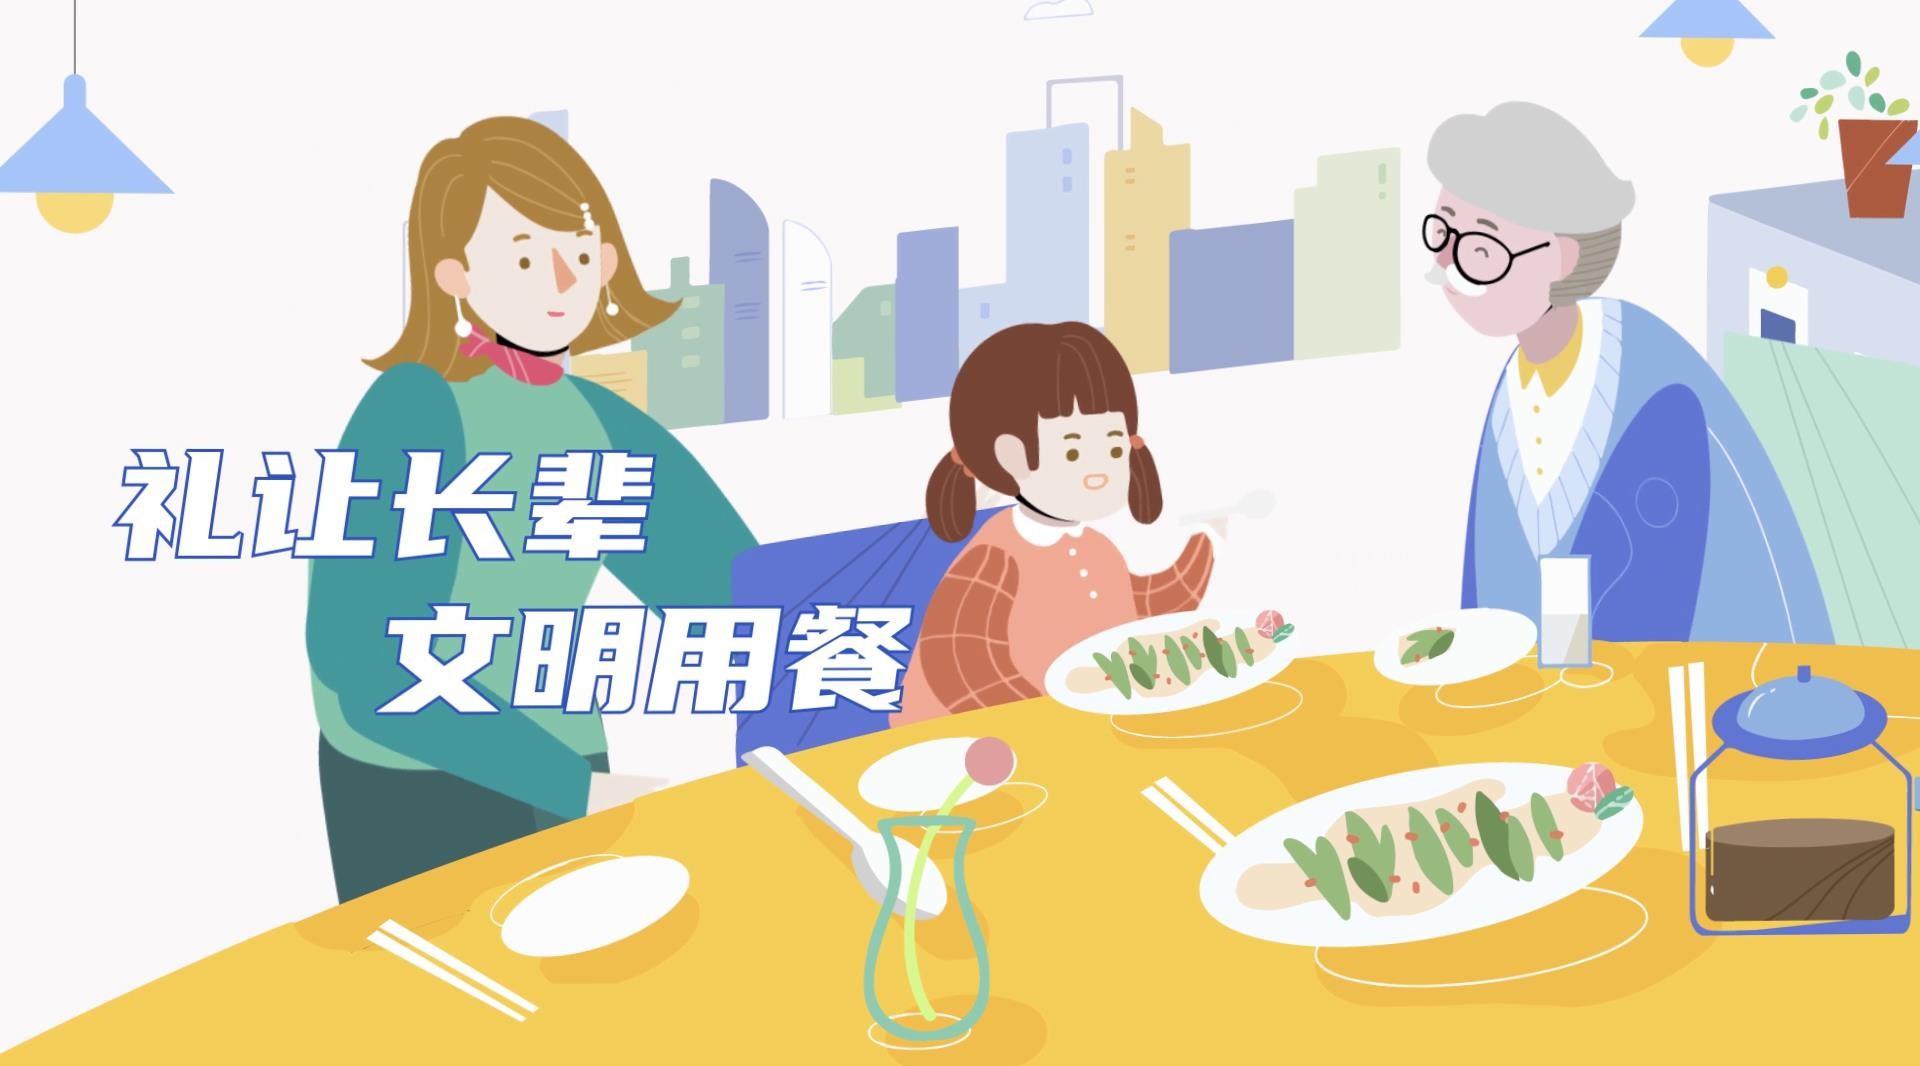 《文明餐桌礼仪风尚》MG动画—安戈力文化